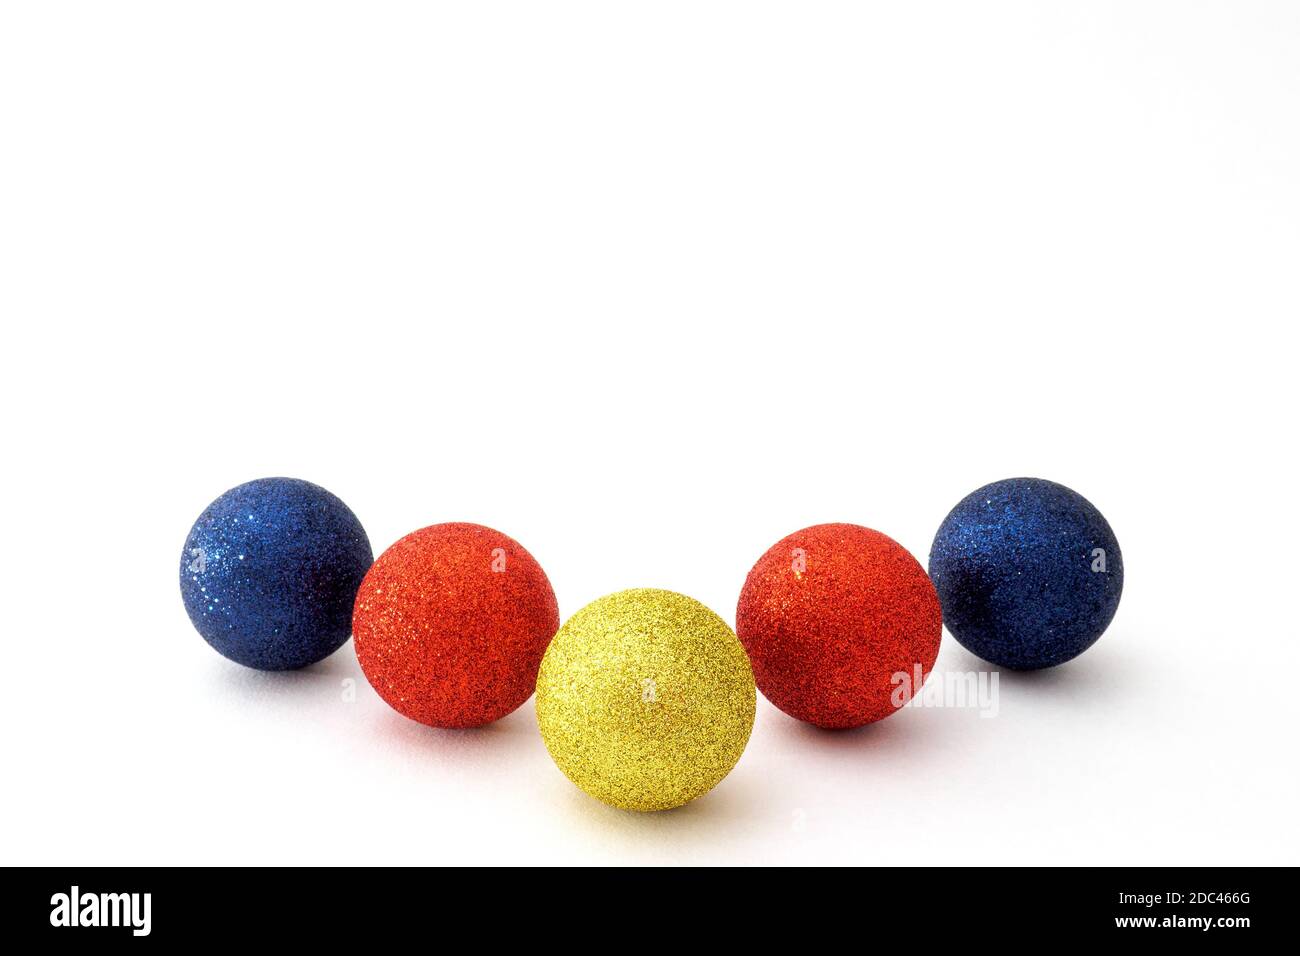 Cinq boules de Noël de couleur bleue, rouge et jaune sur fond blanc. Mise au point sélective, espace de copie Banque D'Images